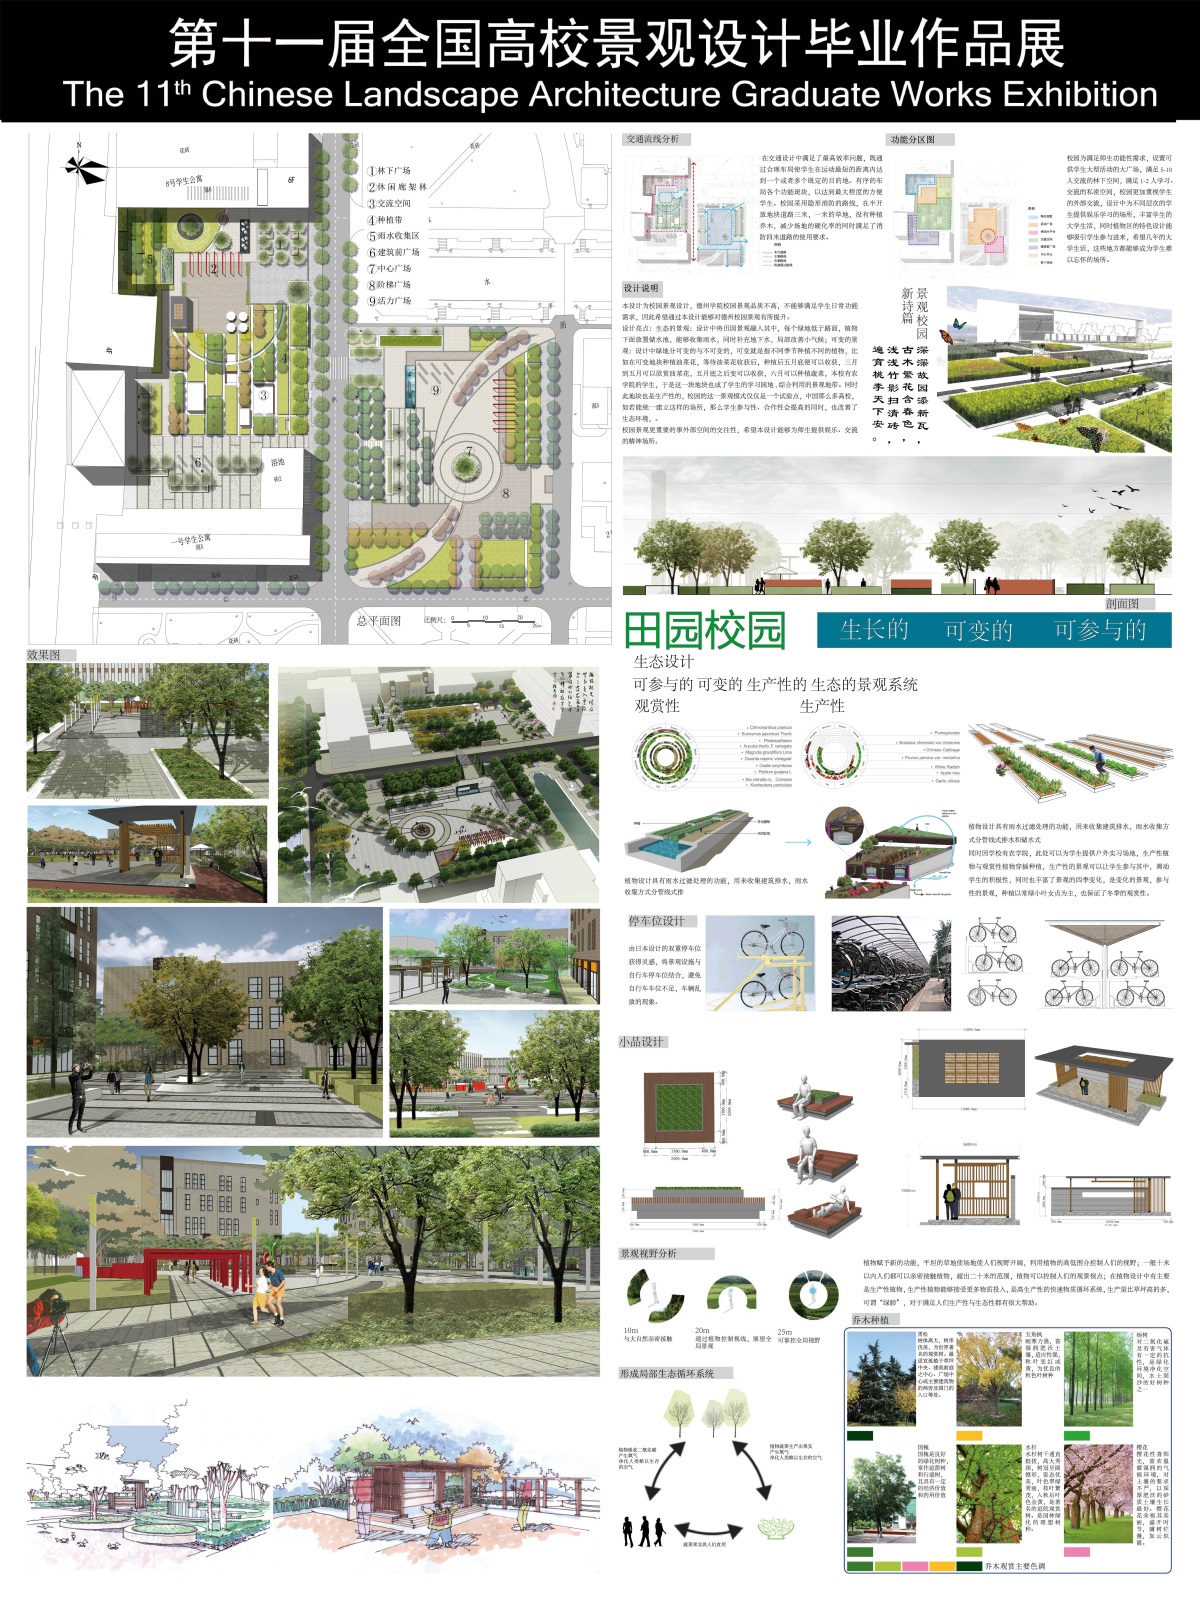 可变的,可参与的田园校园景观---德州学院校园景观设计-1